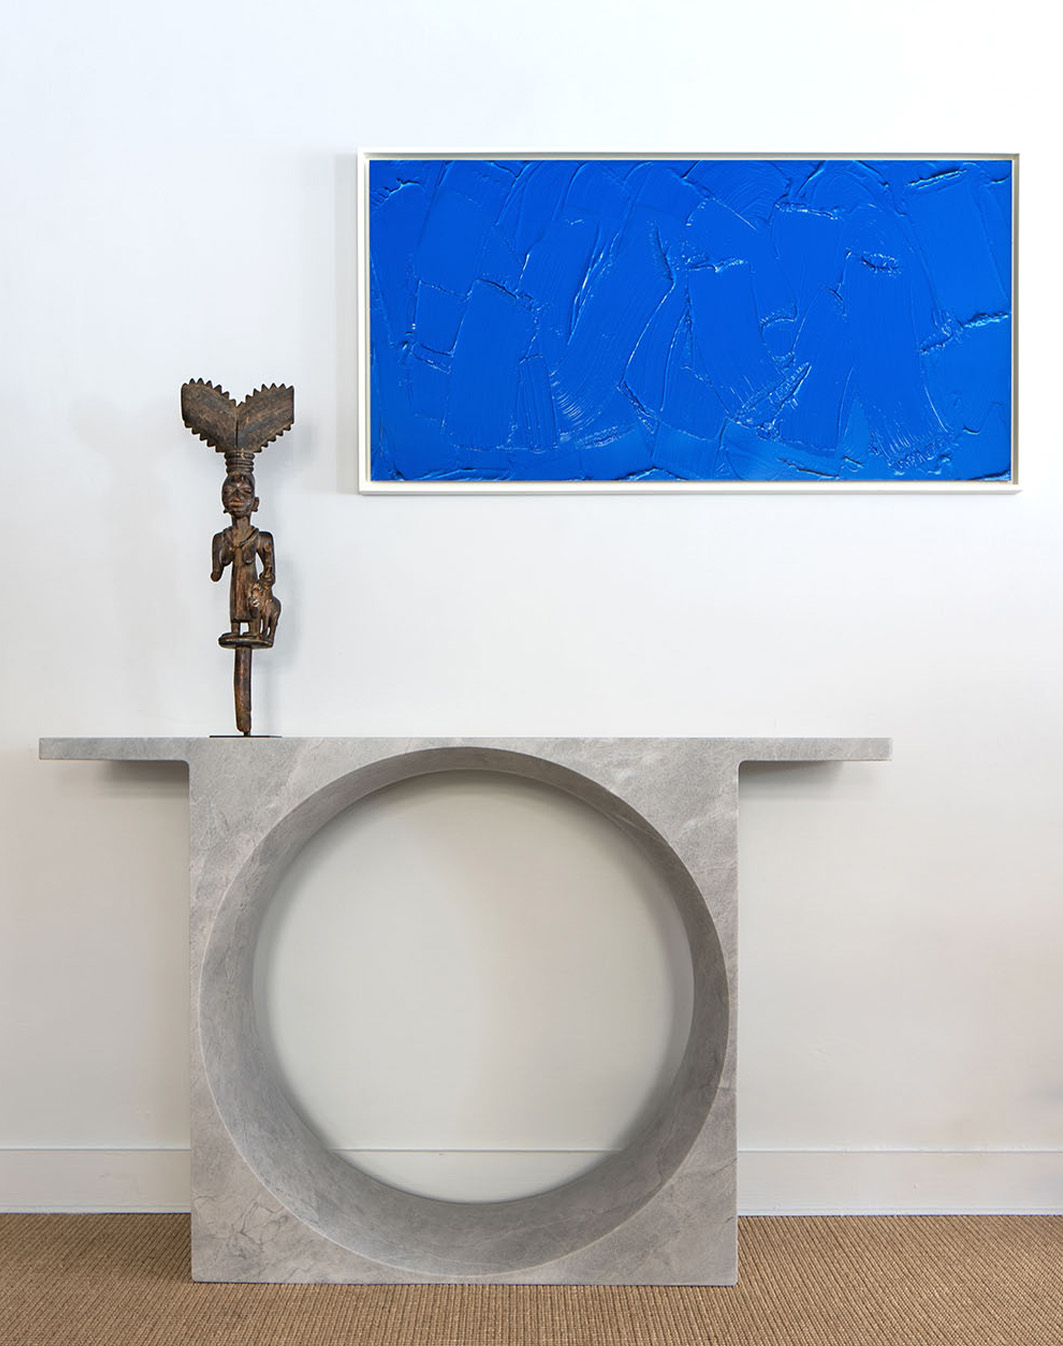 Guillaume Bardet - Lucas Ratton x kamel mennour x Galerie kreo in Saint-Tropez